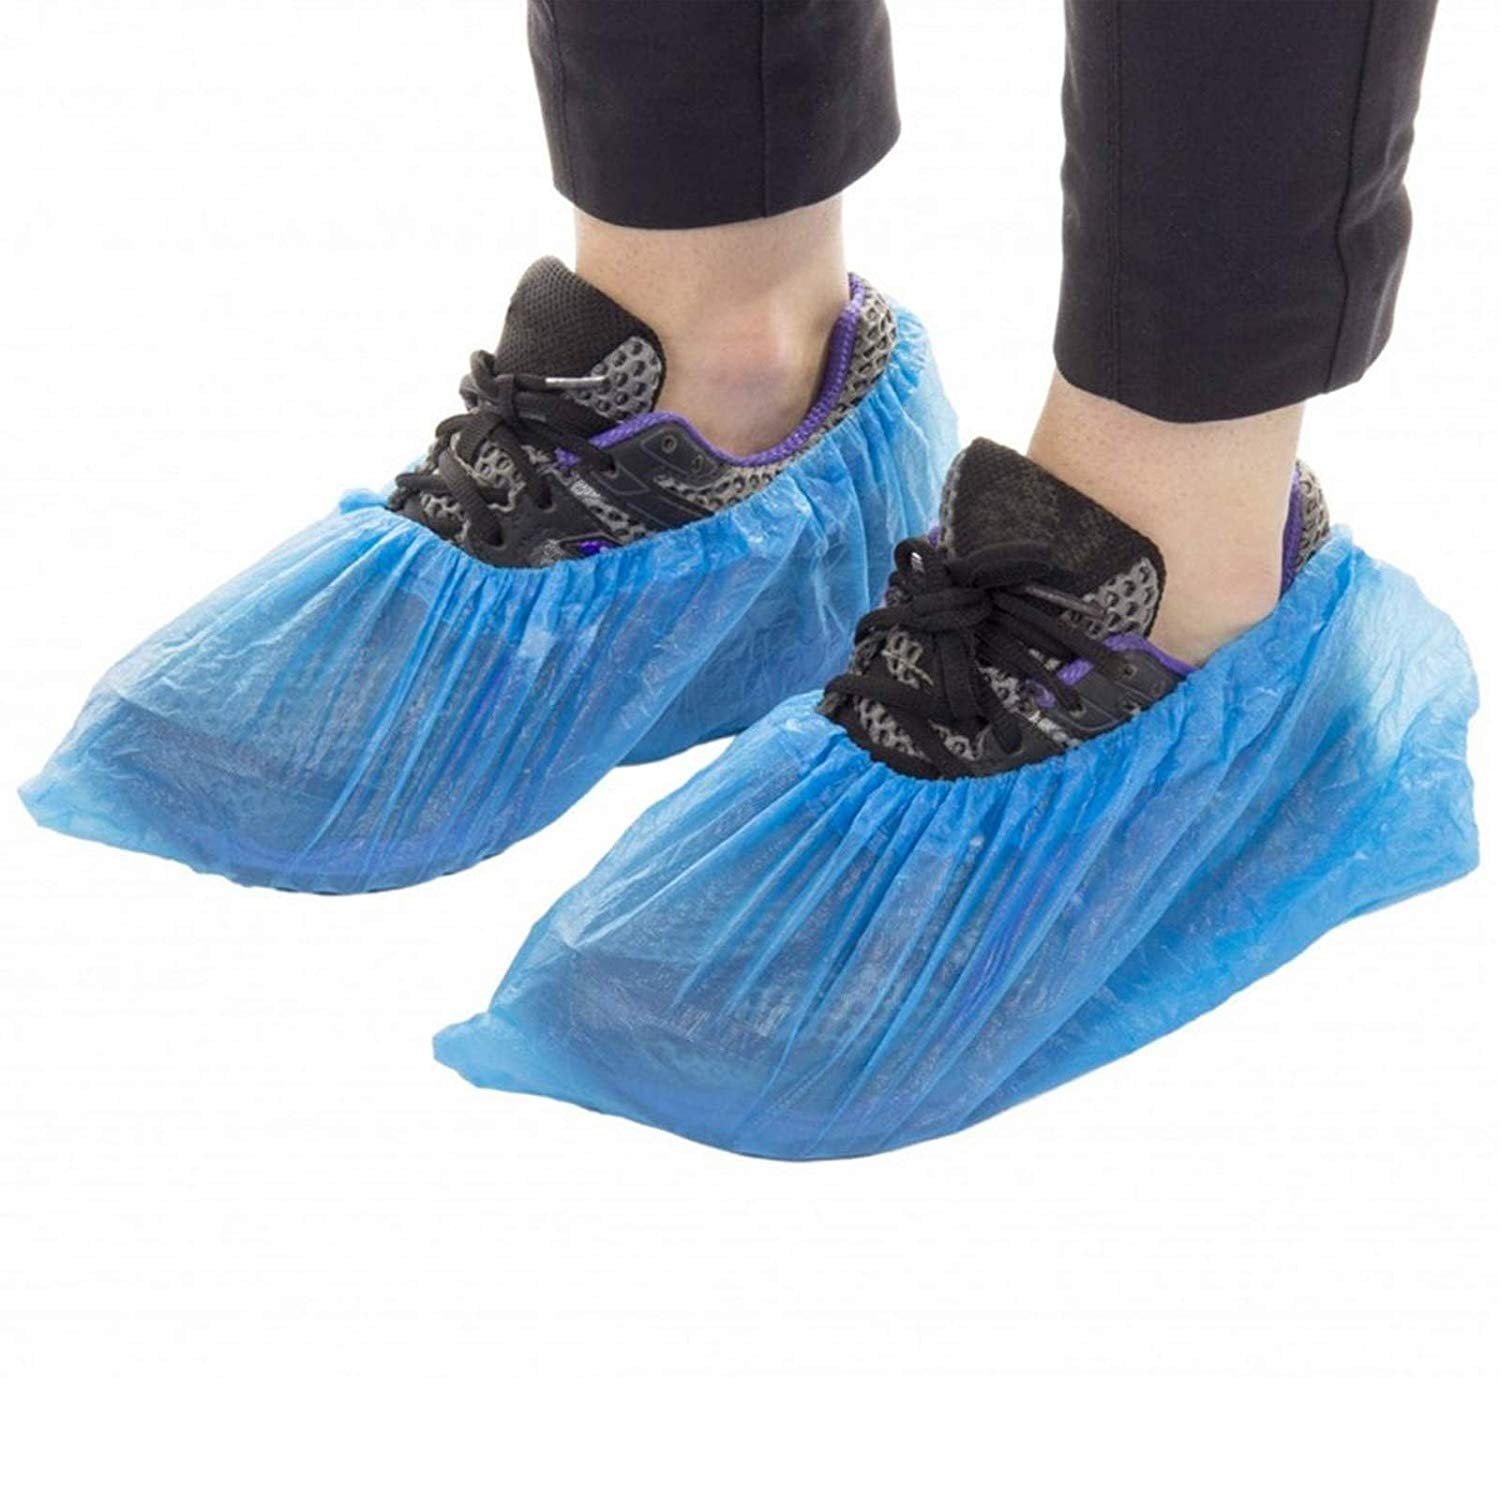 slip on slip resistant shoe covers